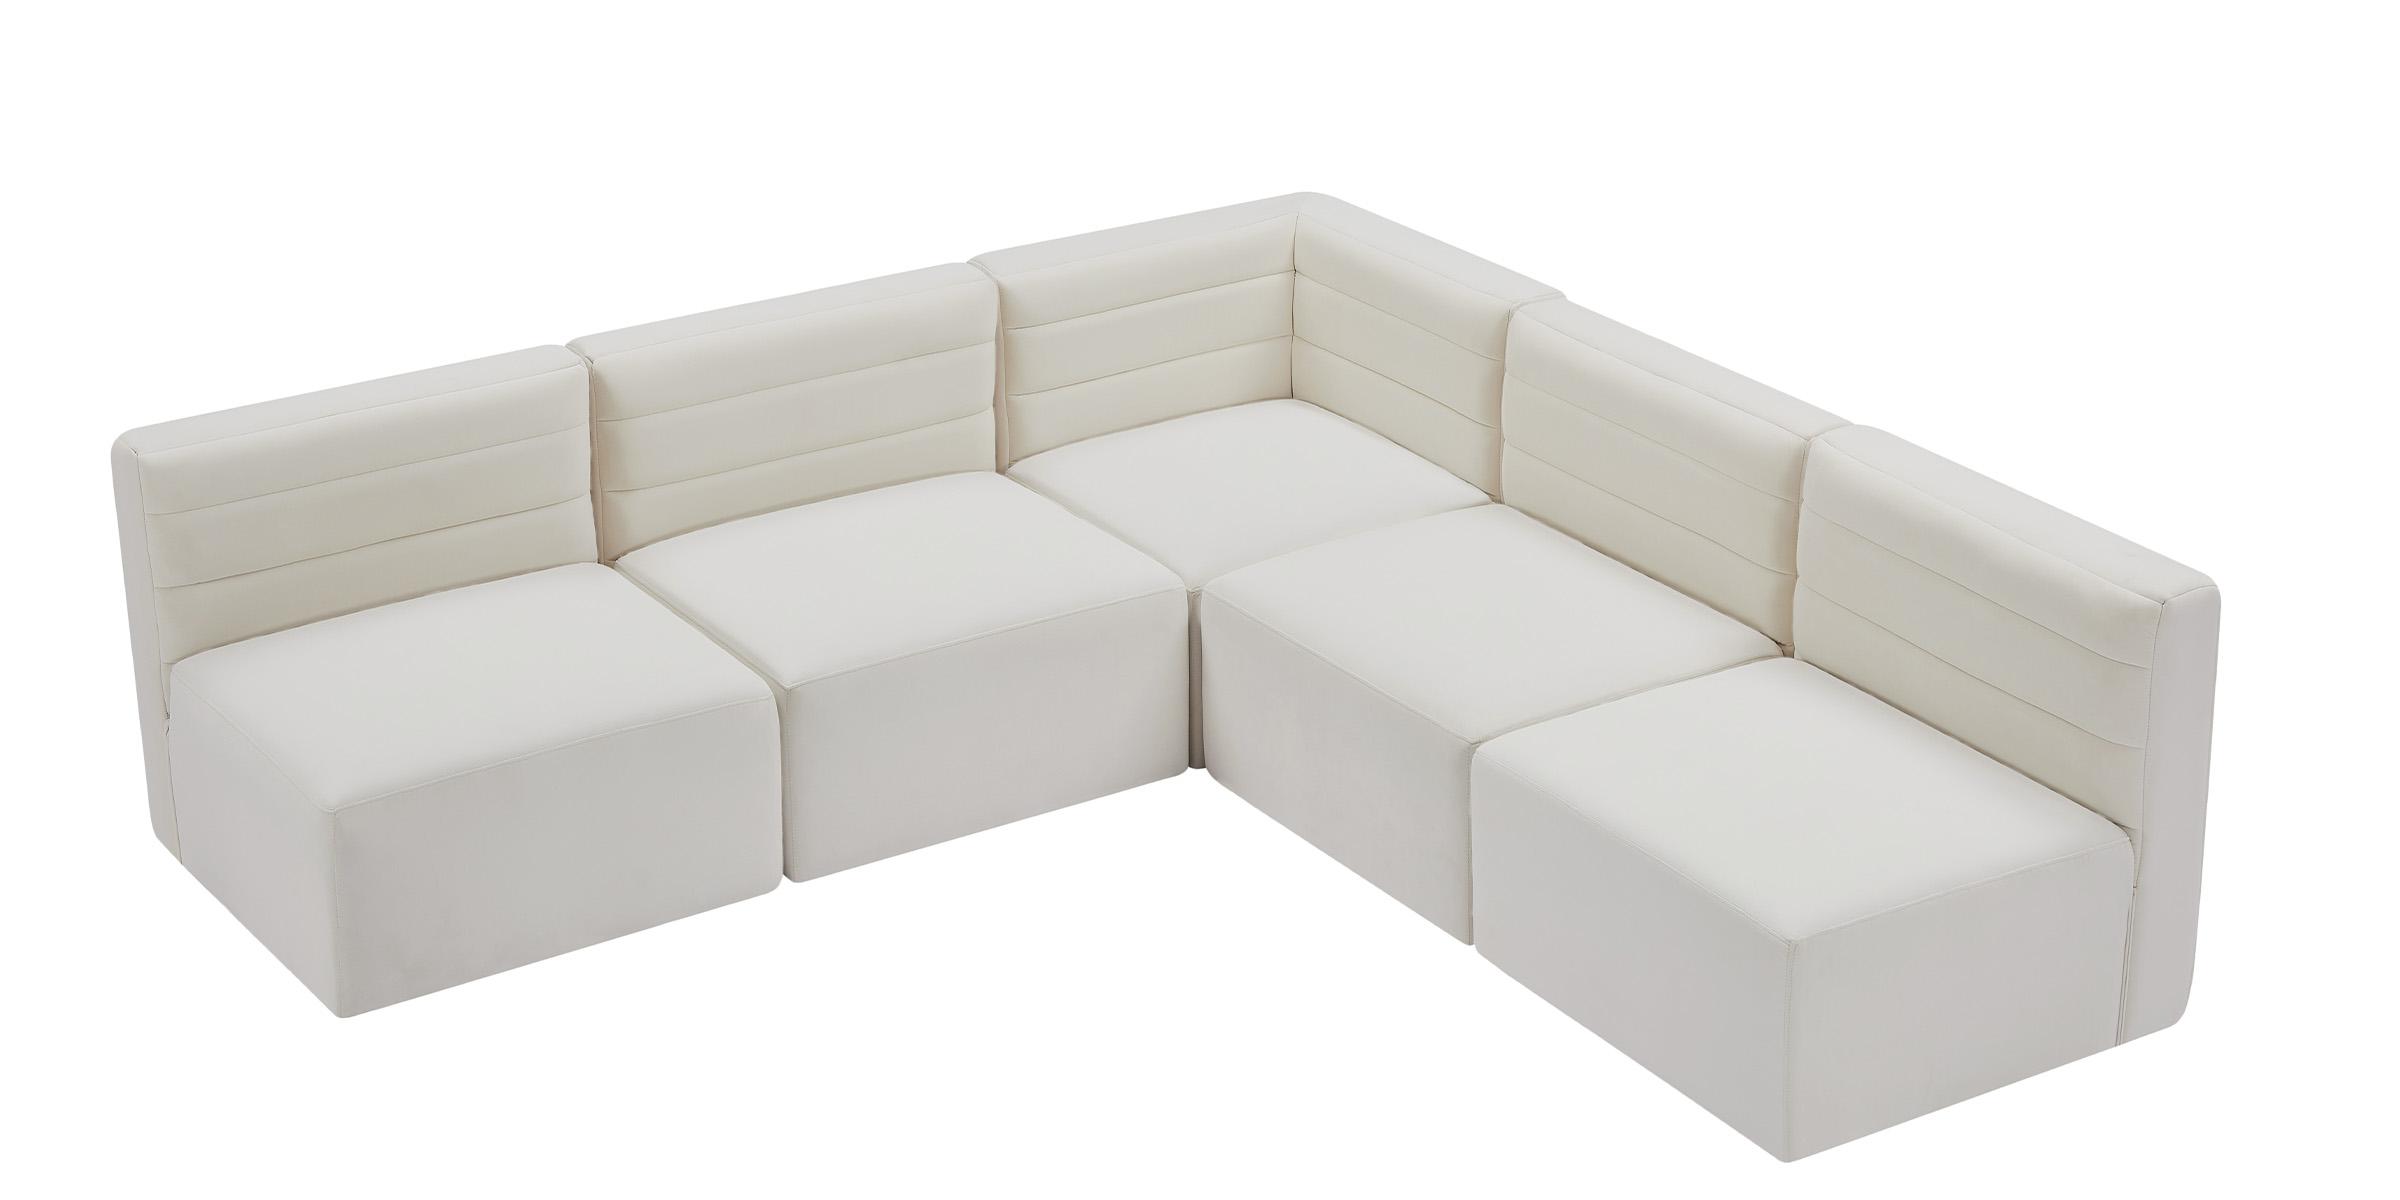 

    
Meridian Furniture Quincy 677Cream-Sec5B Modular Sectional Sofa Cream 677Cream-Sec5B
